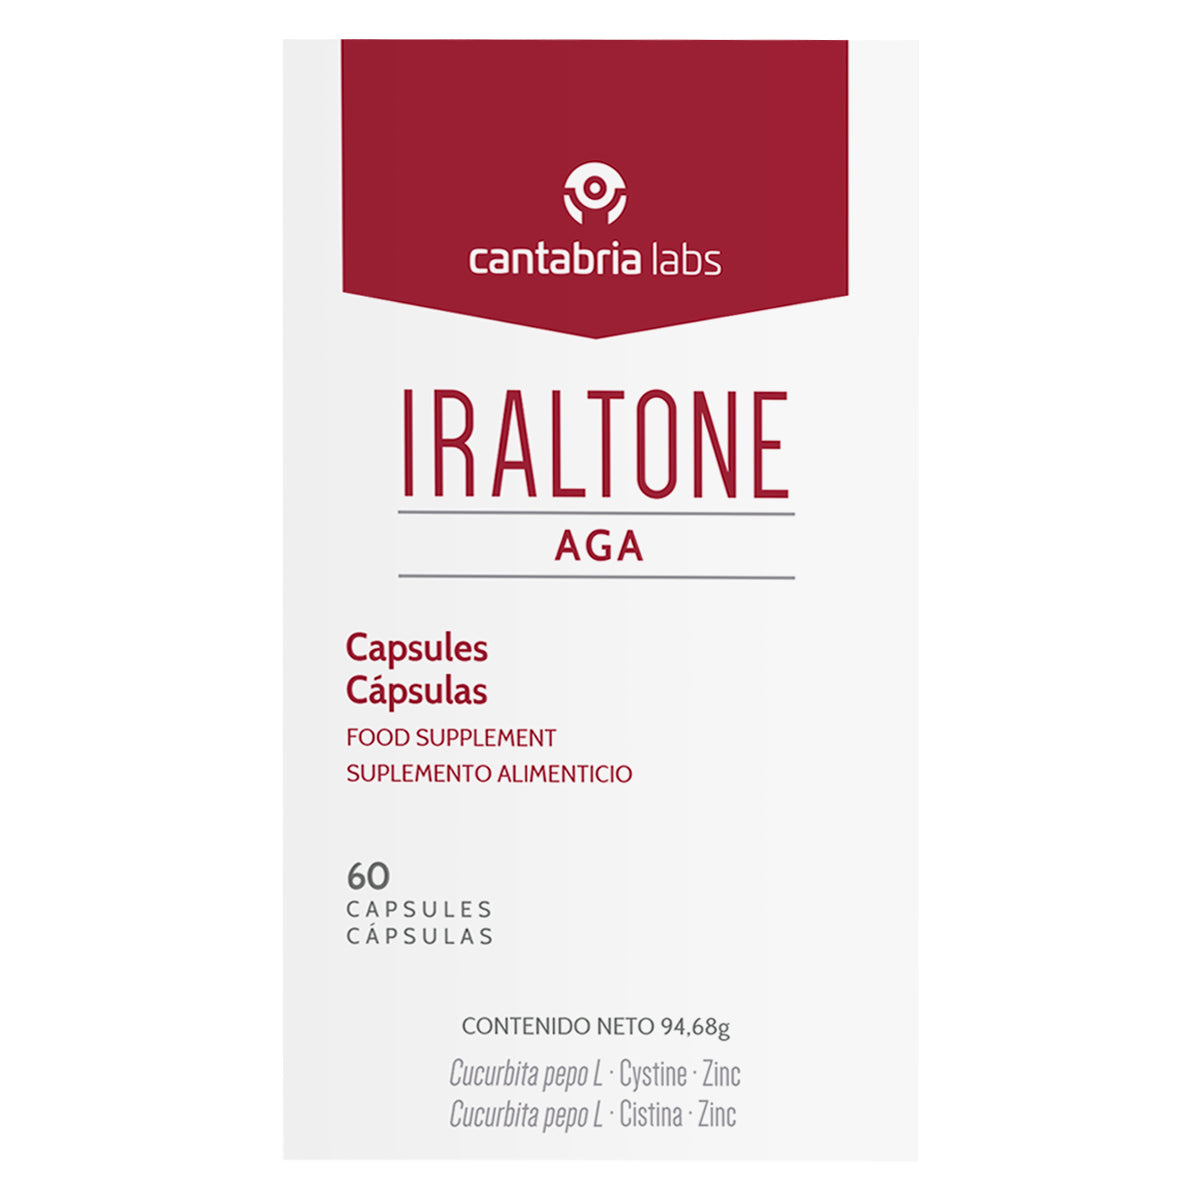 Cantabria Labs Iraltone AGA capsulas complemento alimenticio 60 cps.